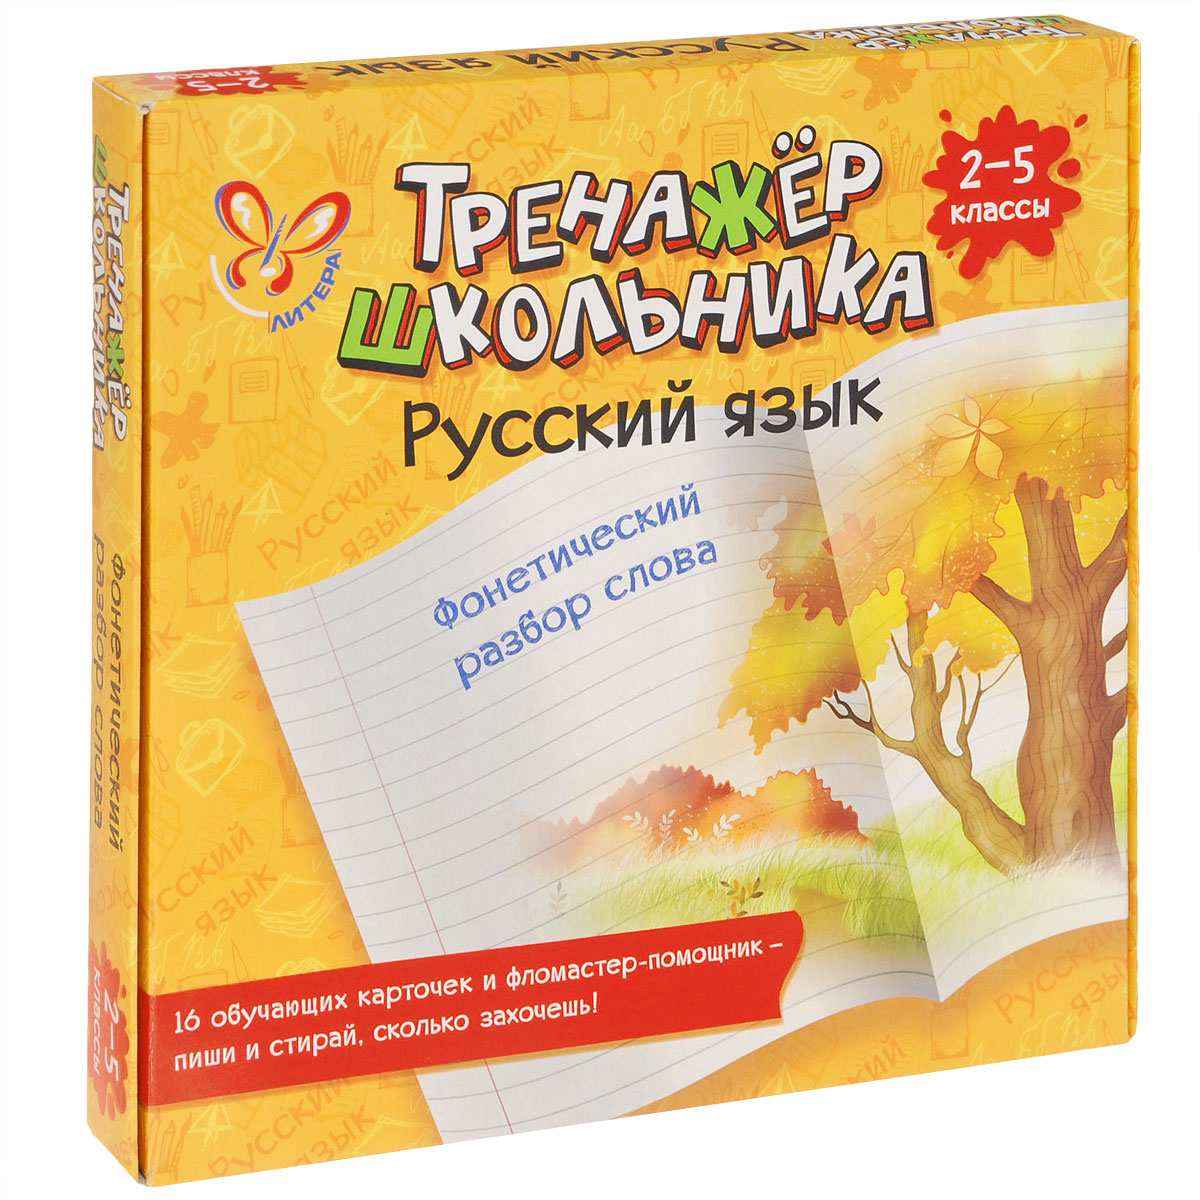 Русский язык. 2-5 классы. Фонетический разбор слова (набор из 16 карточек)